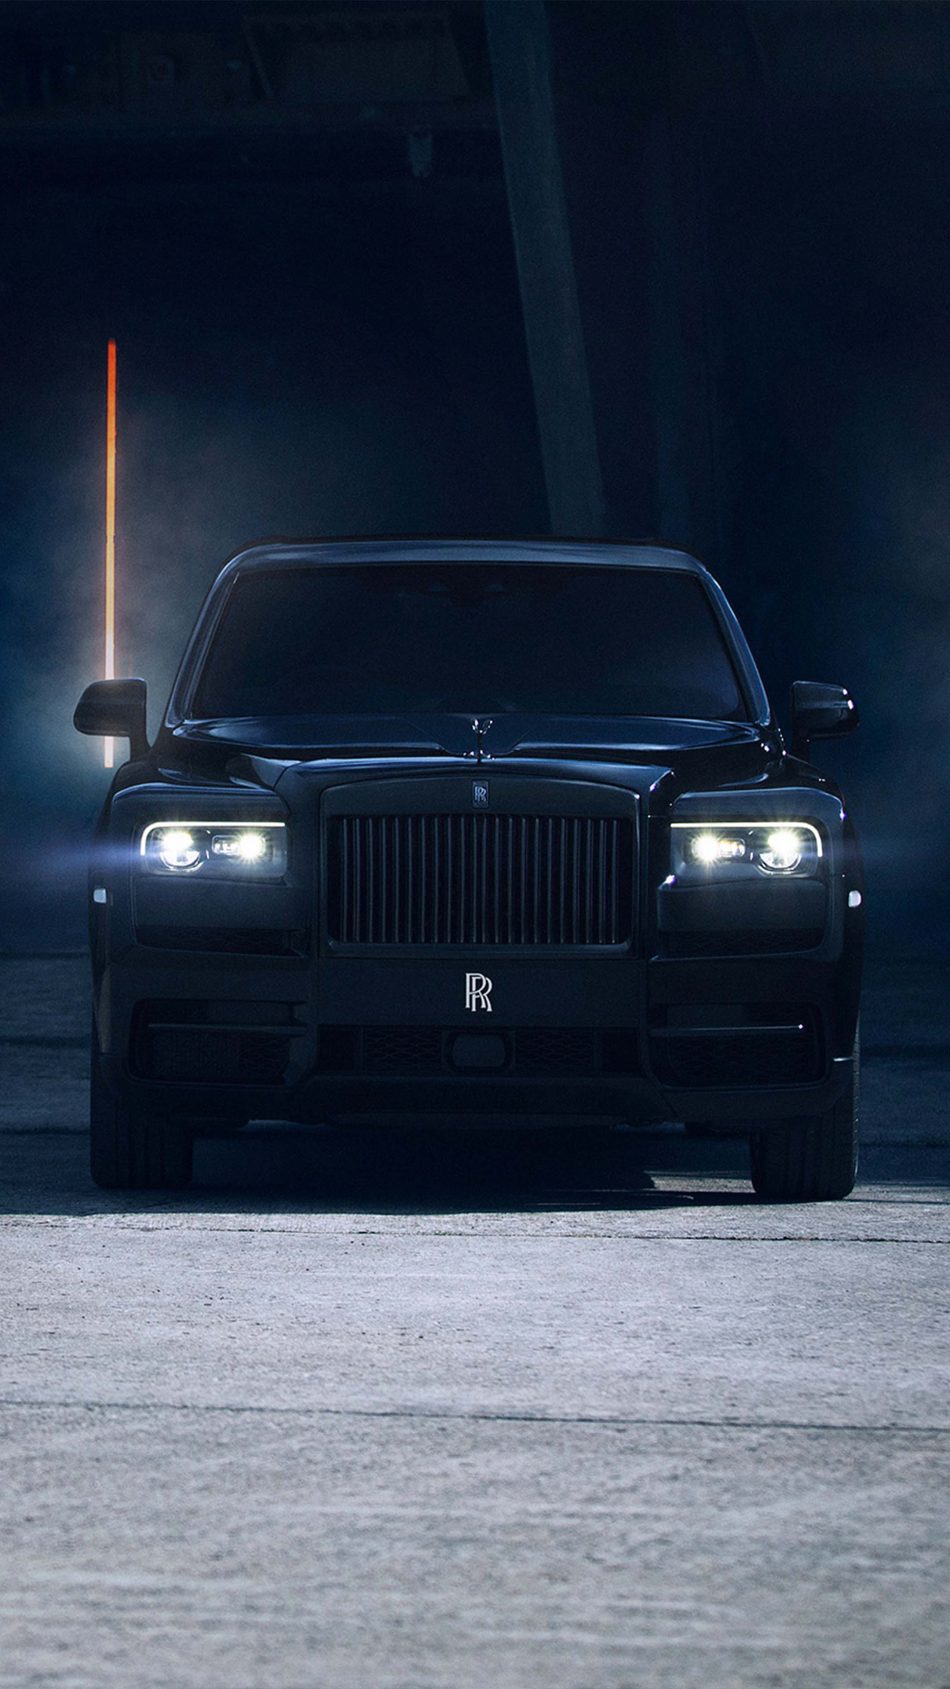 Rolls Royce Cullinan Black Badge 2019 4k Ultra Hd Mobile - Ultra Hd Rolls Royce Hd , HD Wallpaper & Backgrounds